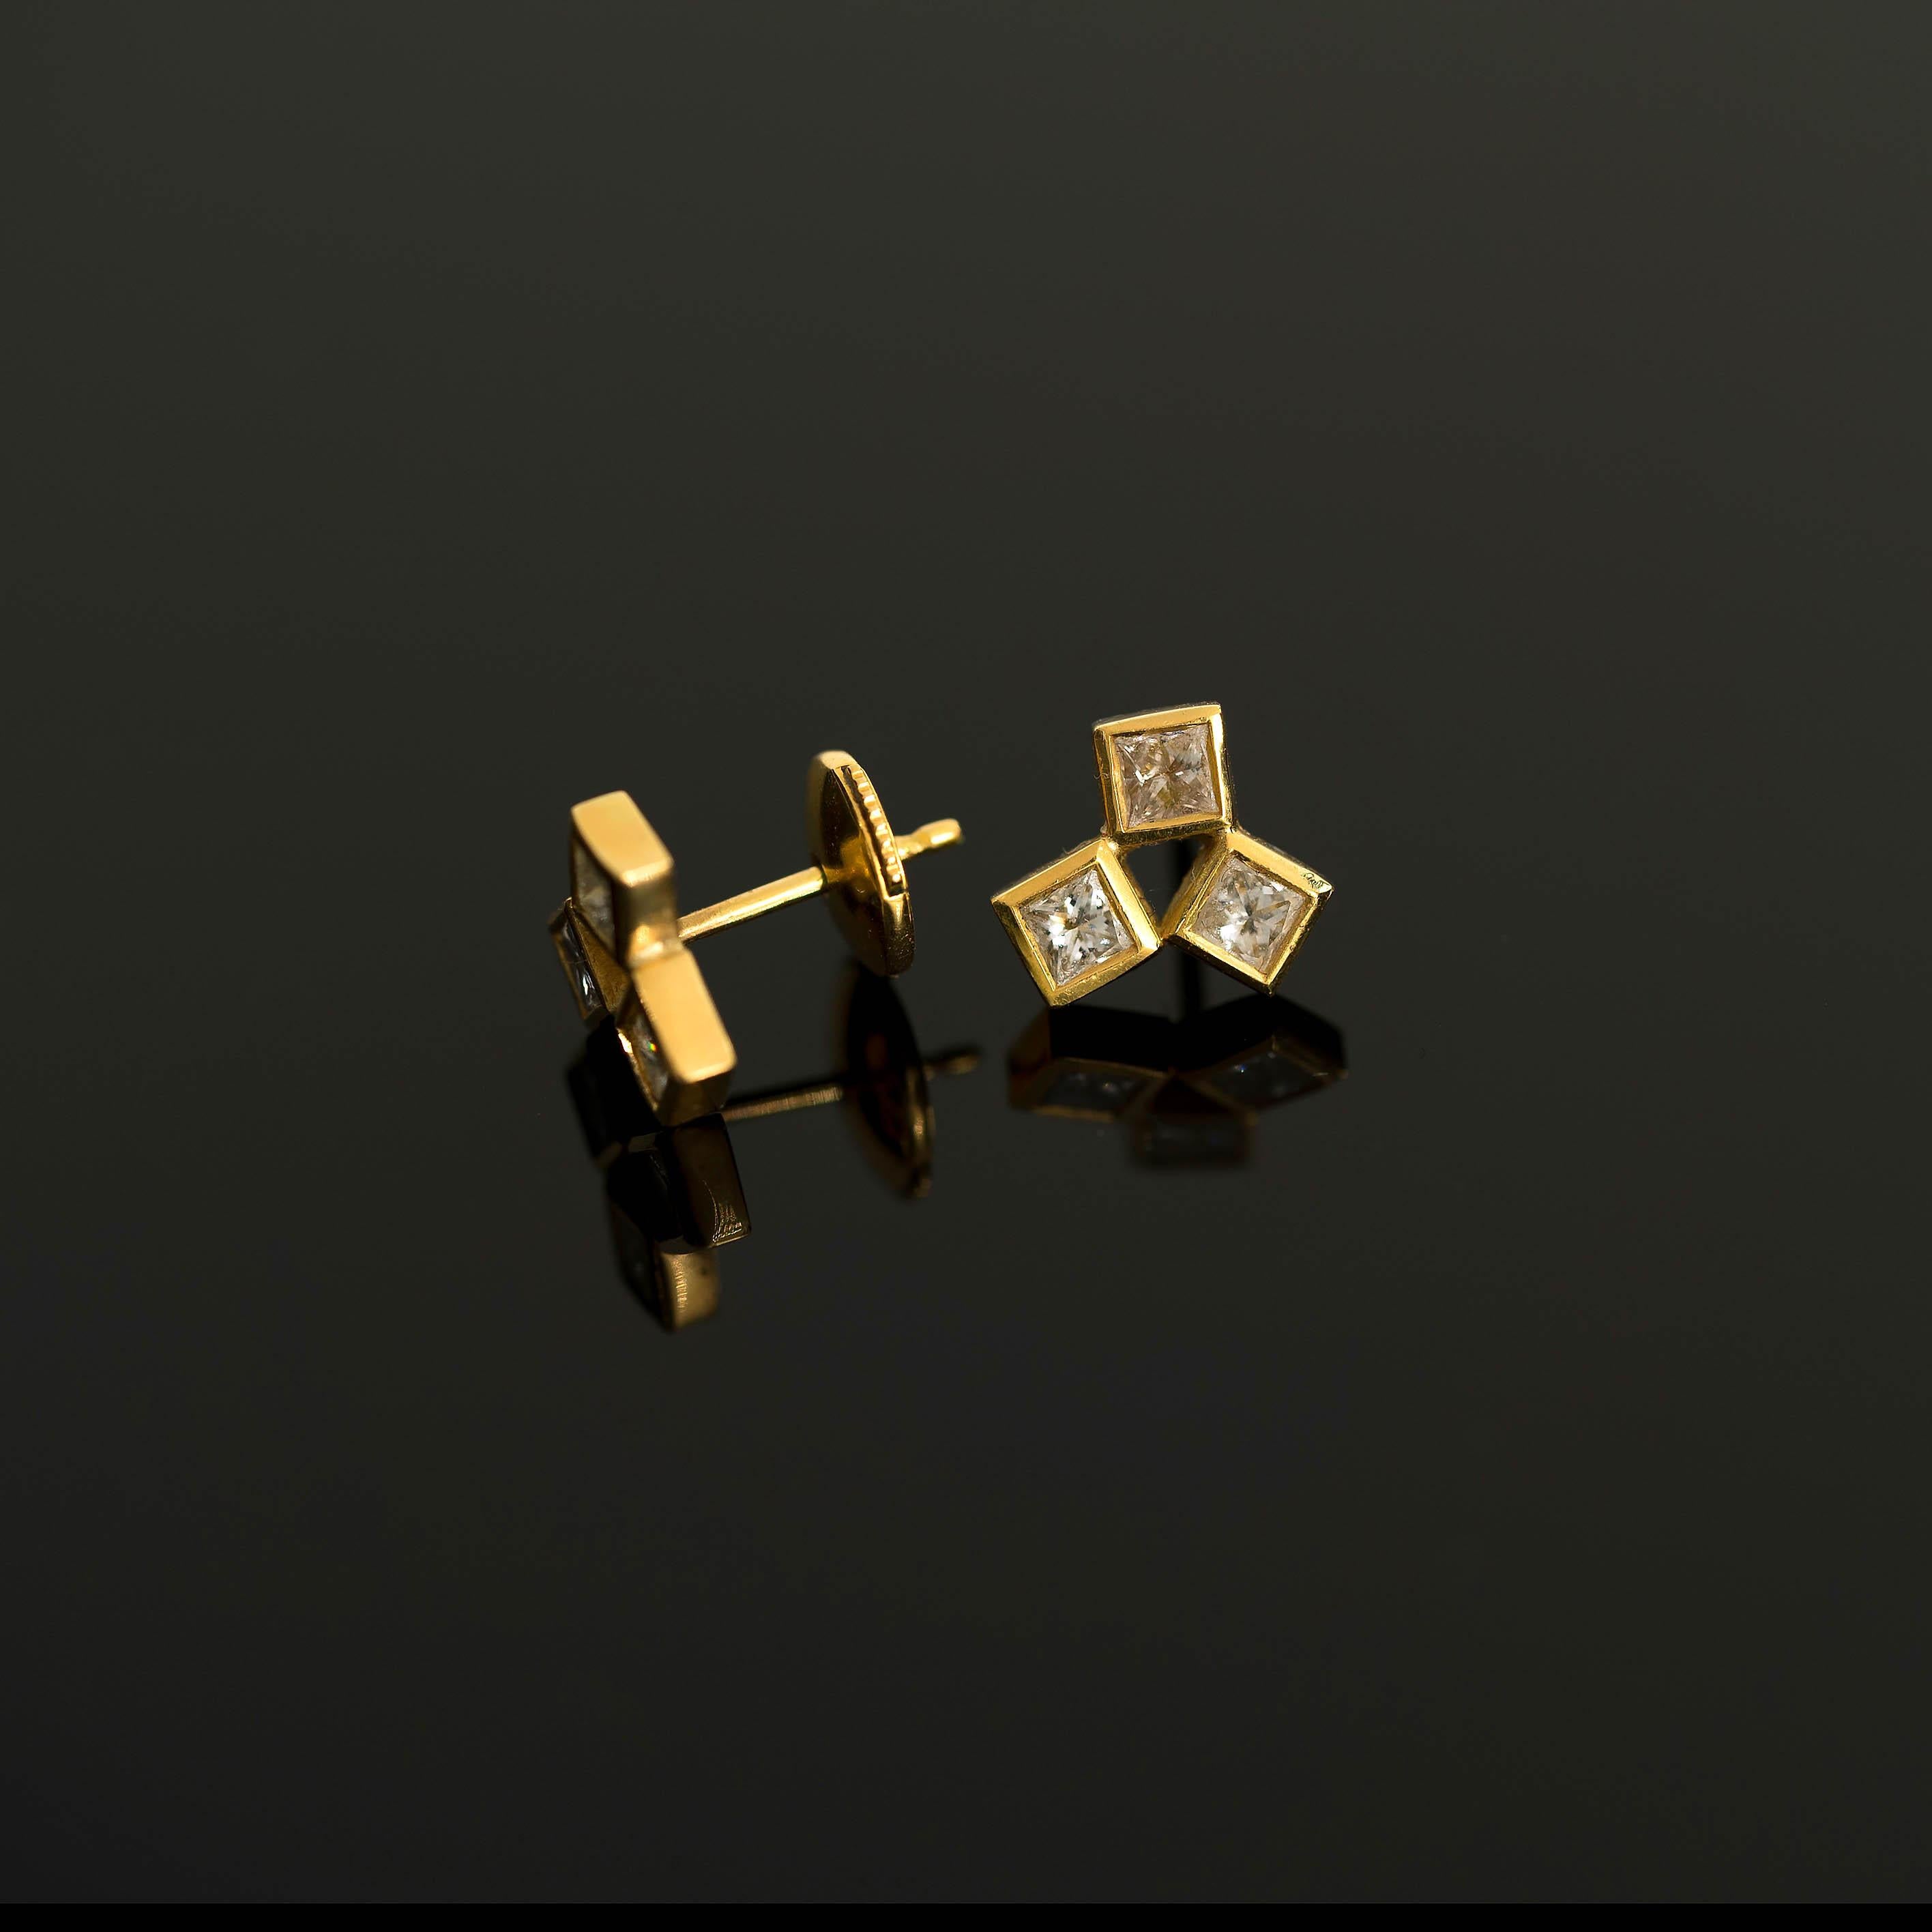 9 diamond earrings